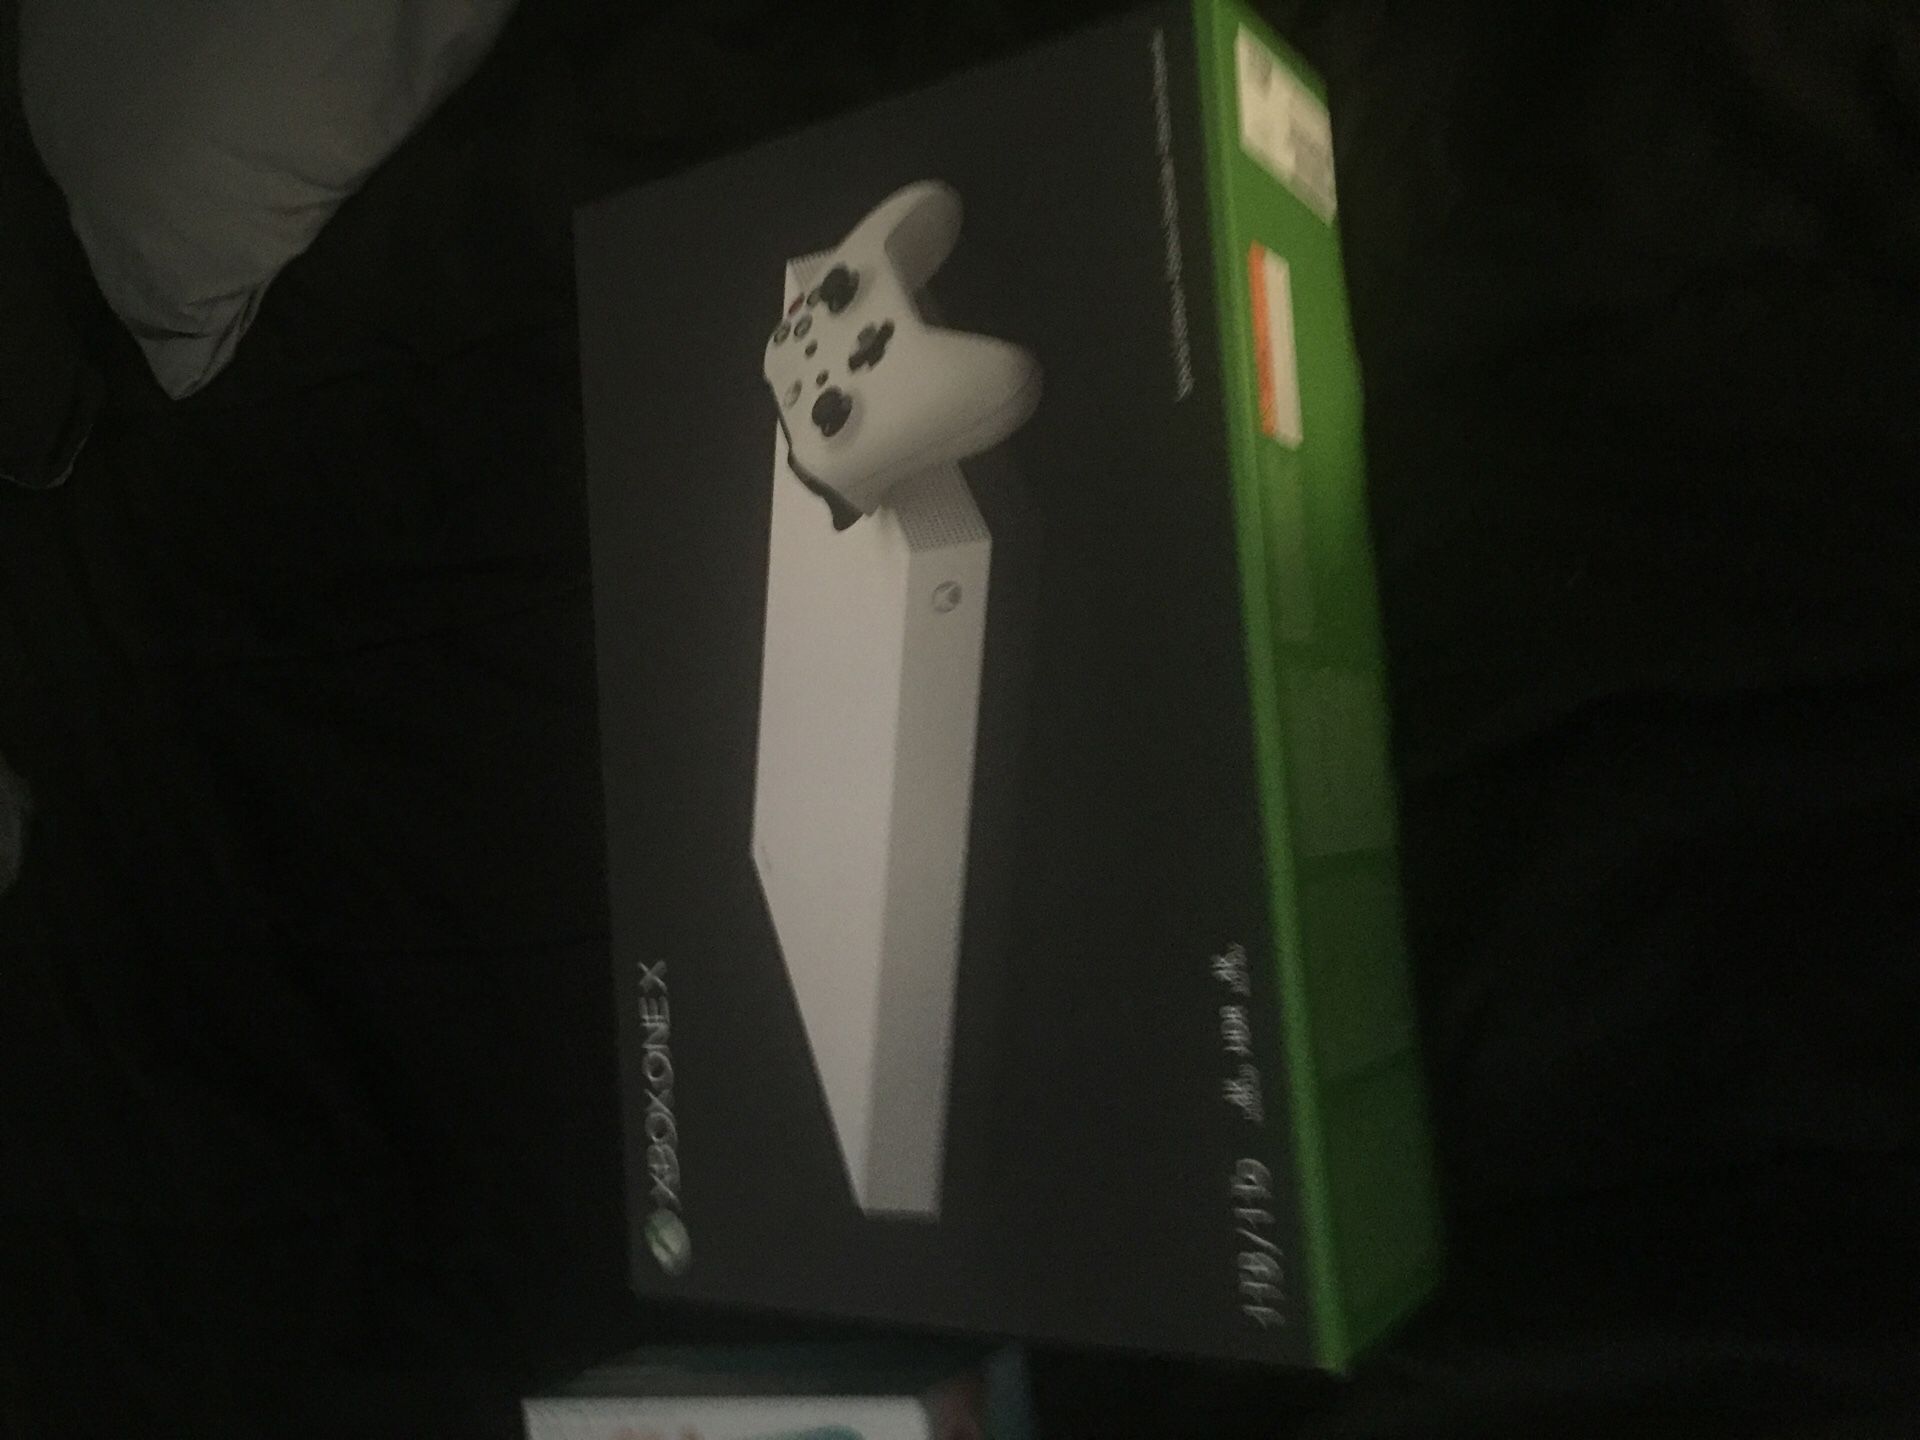 Brand new Xbox one x